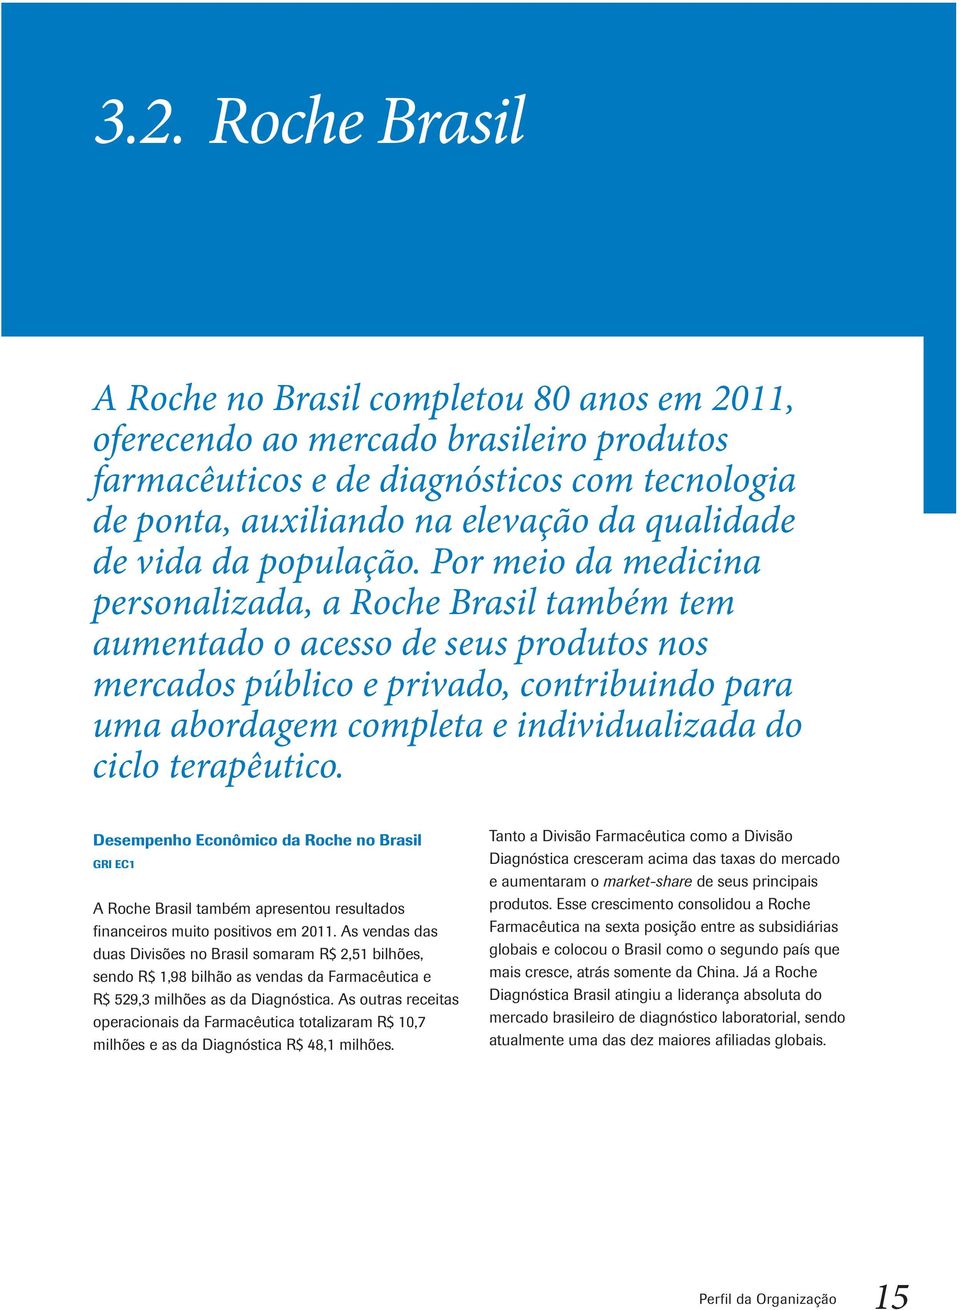 Por meio da medicina personalizada, a Roche Brasil também tem aumentado o acesso de seus produtos nos mercados público e privado, contribuindo para uma abordagem completa e individualizada do ciclo